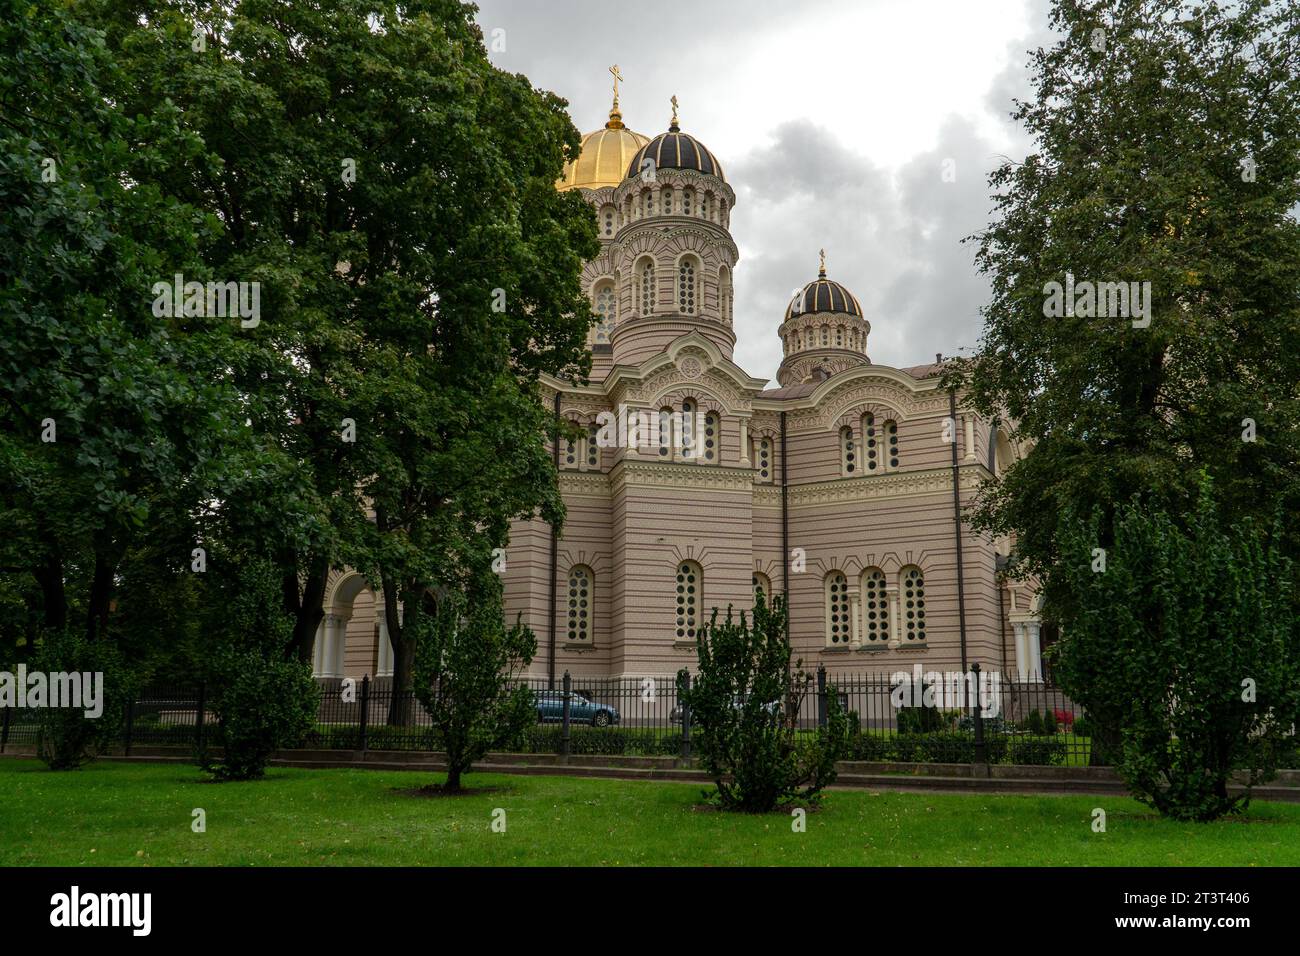 Architektonische Landschaft mit der Rigaer Geburt Christi-orthodoxen Kathedrale. Ein Blick auf dieses majestätische Kirchengebäude an der Esplanade im Zentrum von Riga. Stockfoto